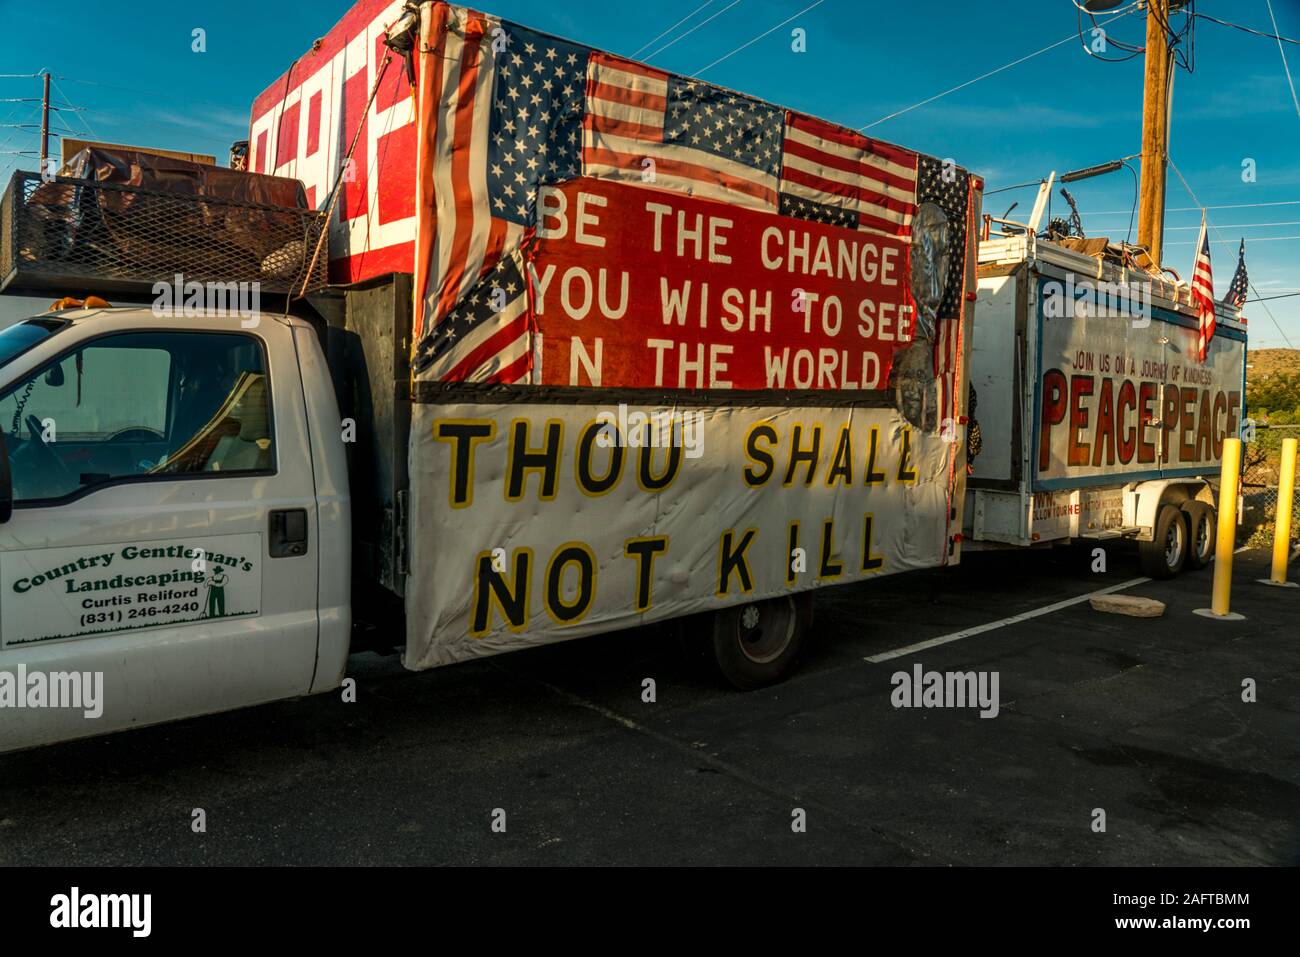 Juli 25, 2019, Kalifornien, USA - Frieden Lkw sagt "Du sollst nicht töten", Kalifornien/Arizona Grenze Interstate 40 Stockfoto